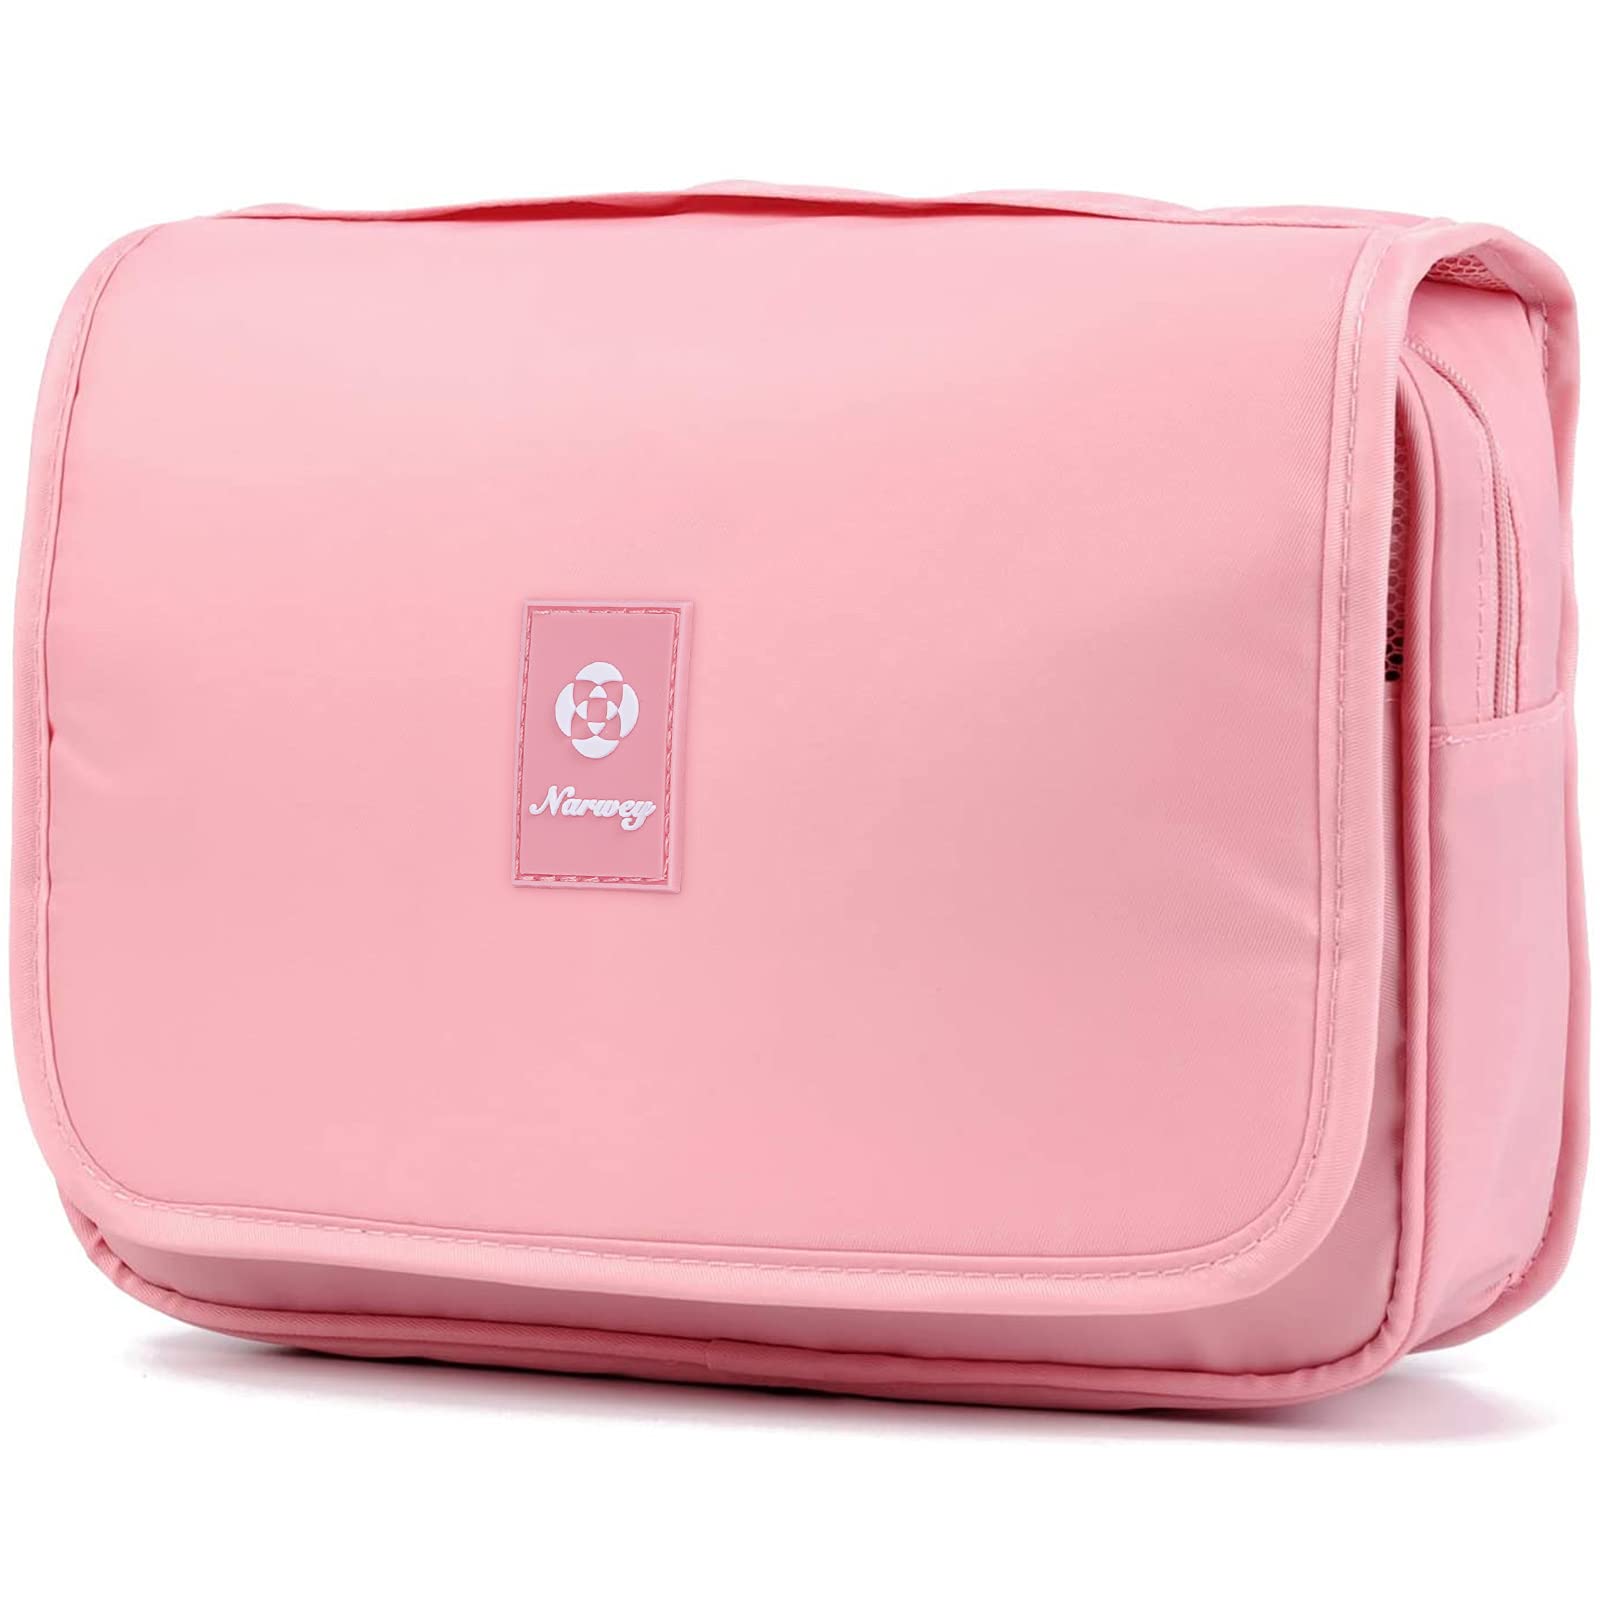 Pink Ladies Hang Bag at Best Price in New Delhi | Gopal Bags